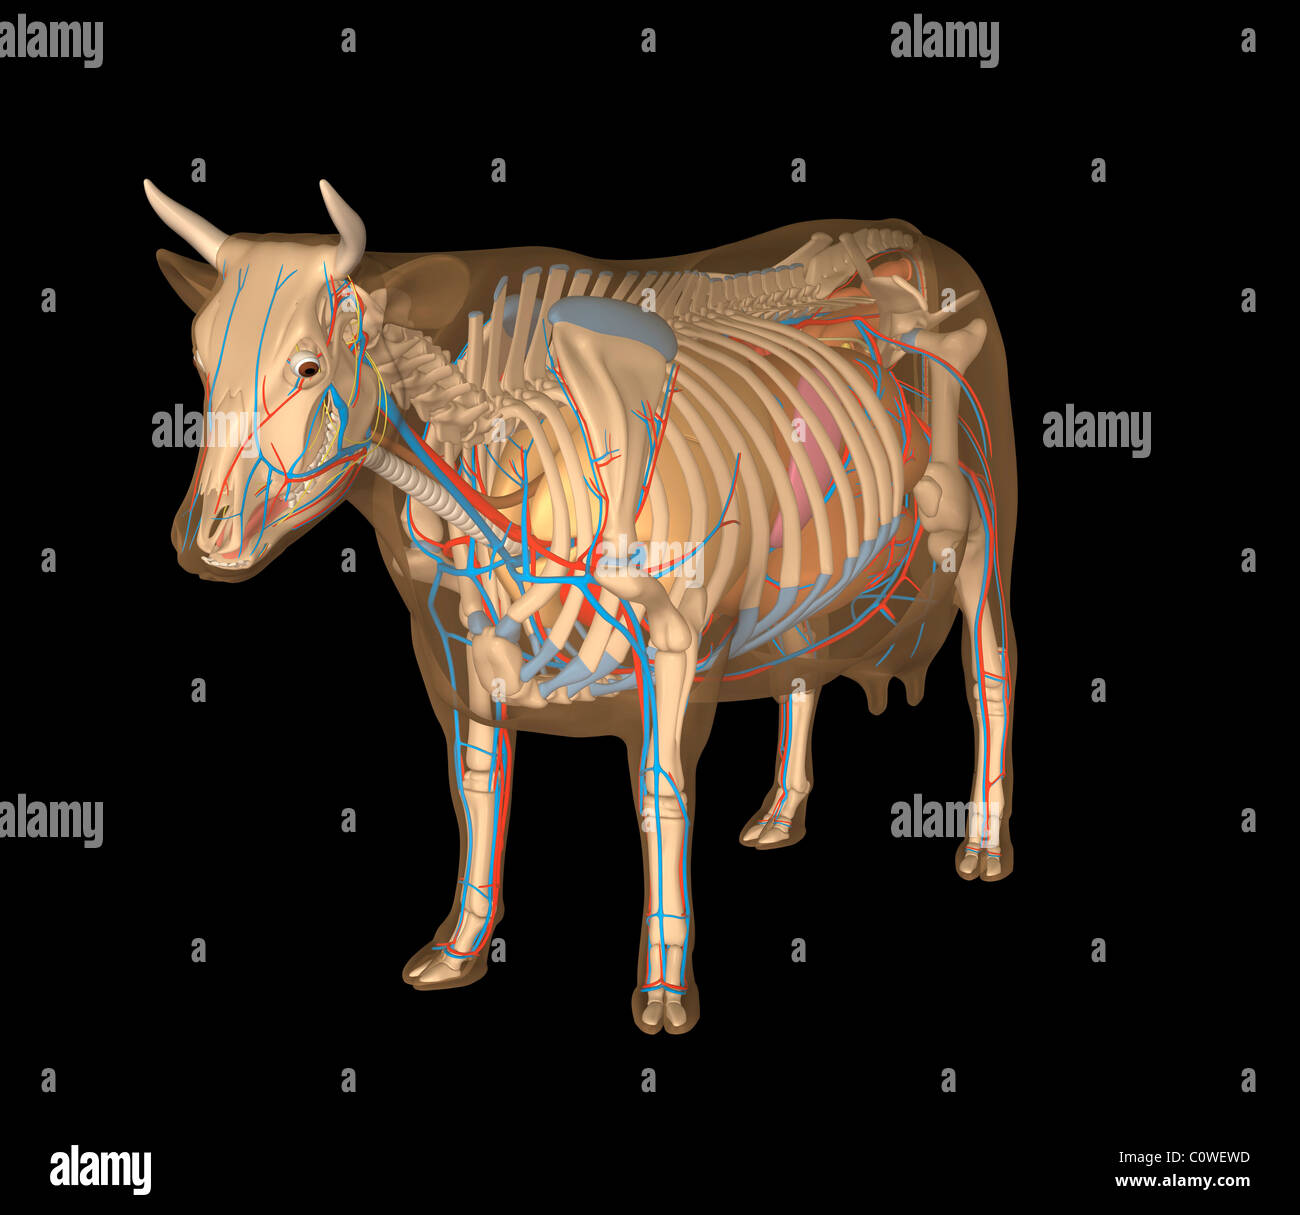 黄牛 牛的内脏器官 牛的骨骼 牛内脏 老黄牛 哺乳动物牛解剖-cg模型免费下载-CG99